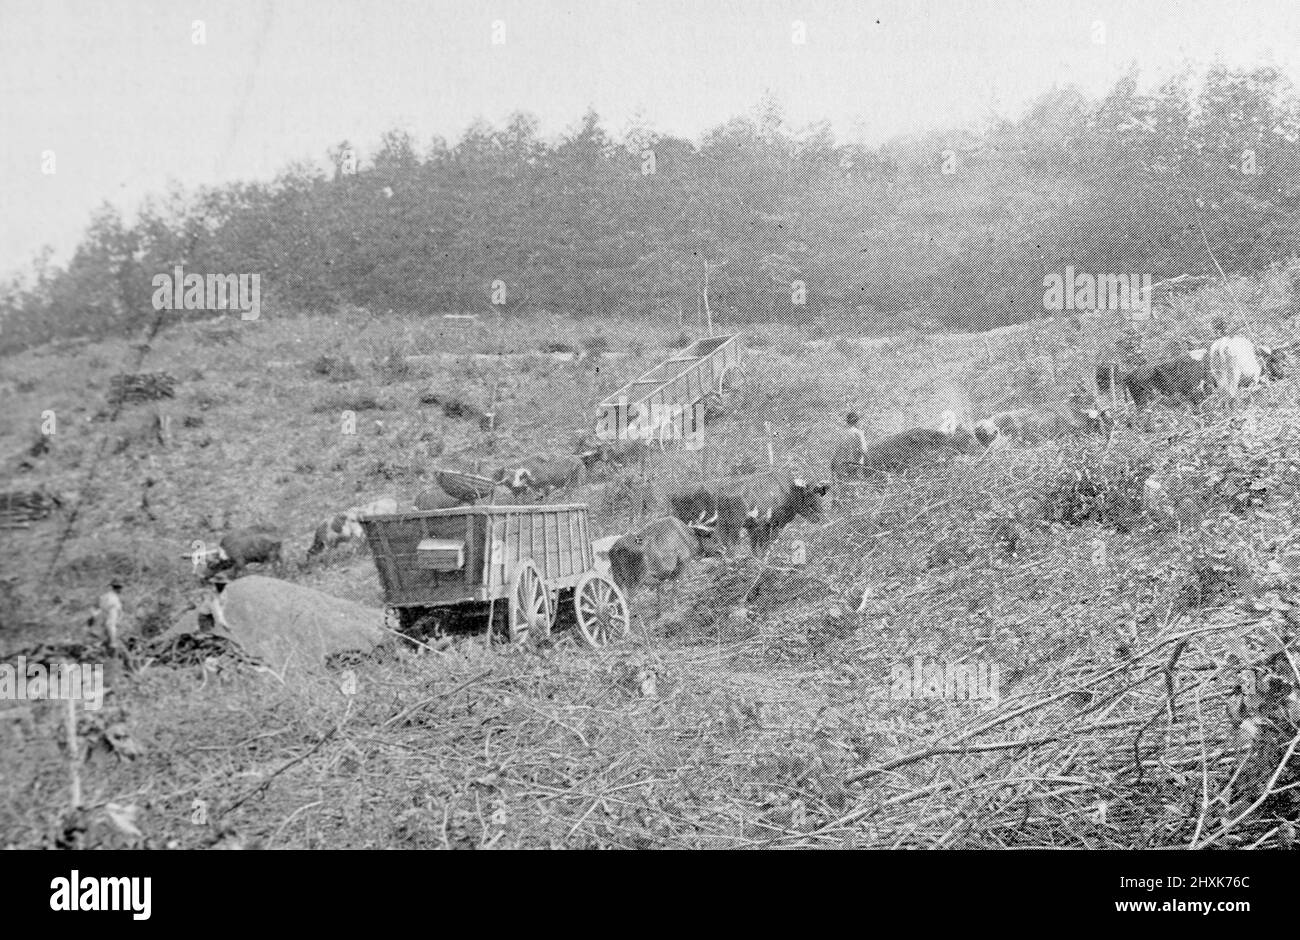 Produzione di carbone per un altoforno nel sud dell'Ohio, Stati Uniti. Fotografia in bianco e nero scattata intorno al 1890s Foto Stock